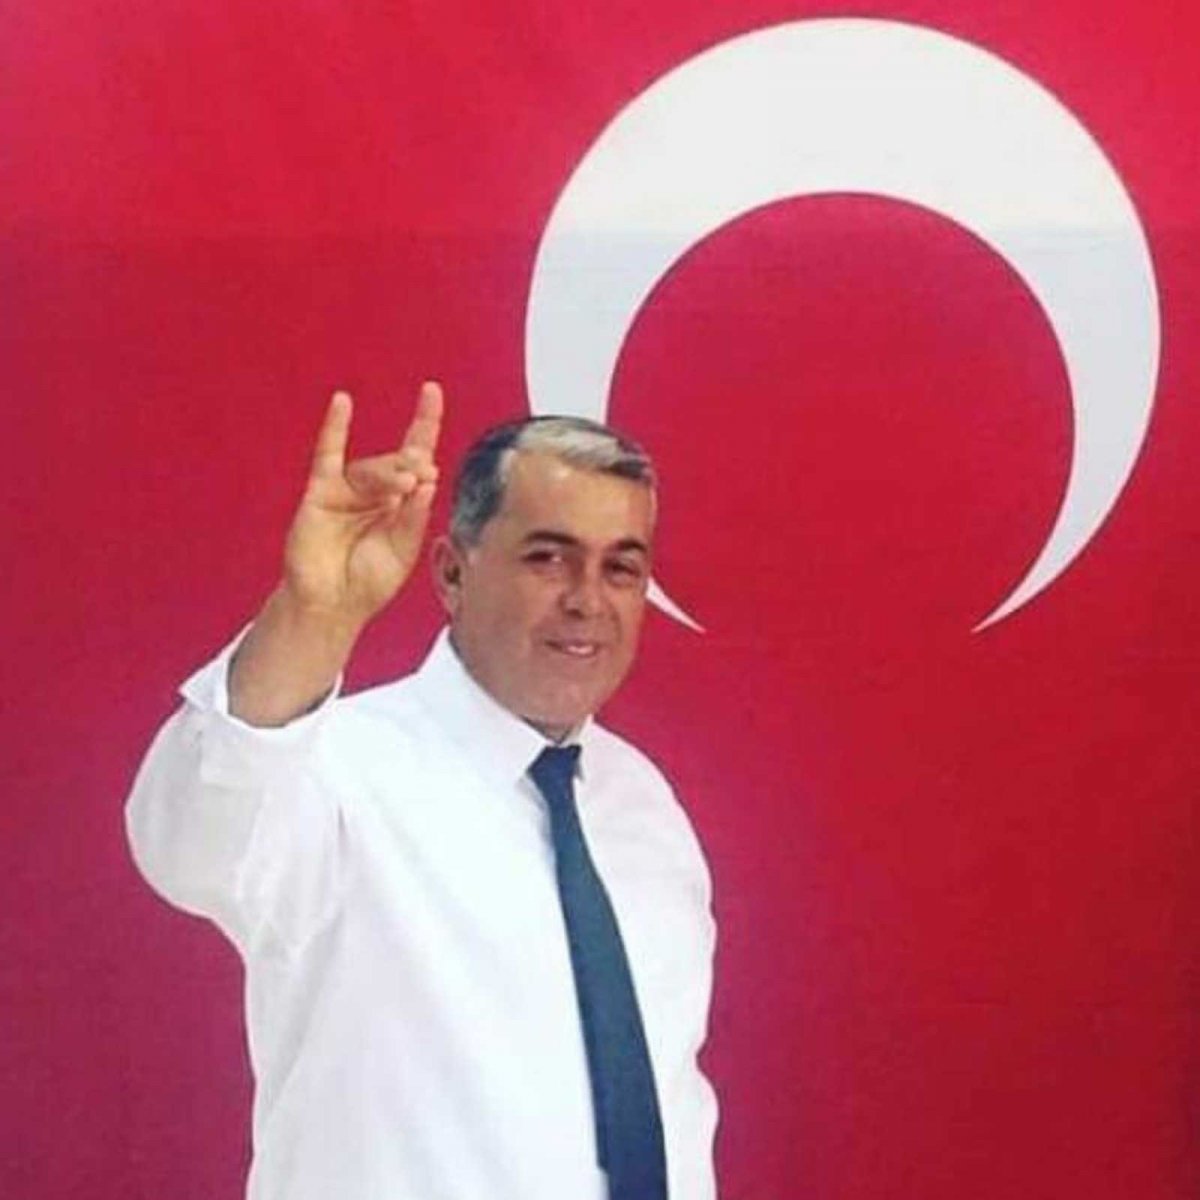 MHP Araban İlçe Başkanı Gör, trafik kazasında hayatını kaybetti #2